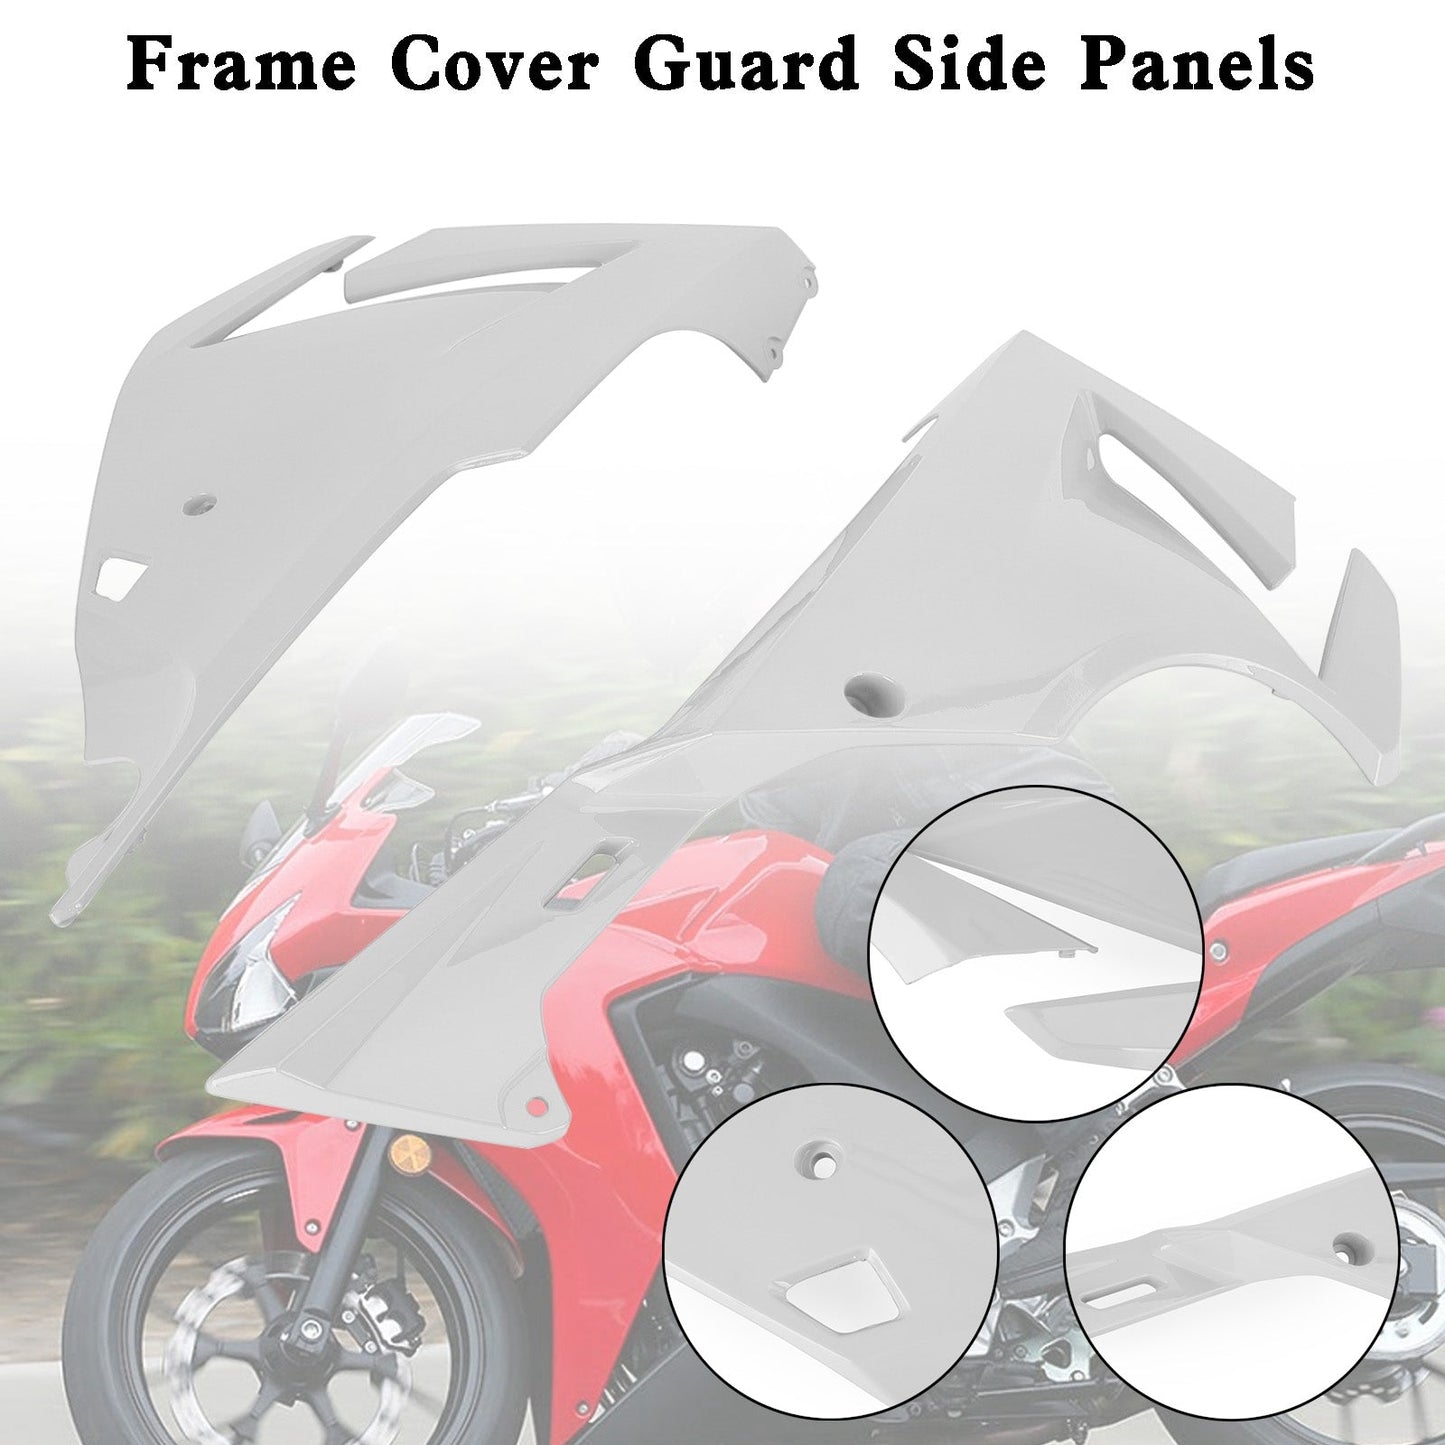 Side frame Panel Cover Fairing Cowl for Honda CBR500R 2019-2021 Black